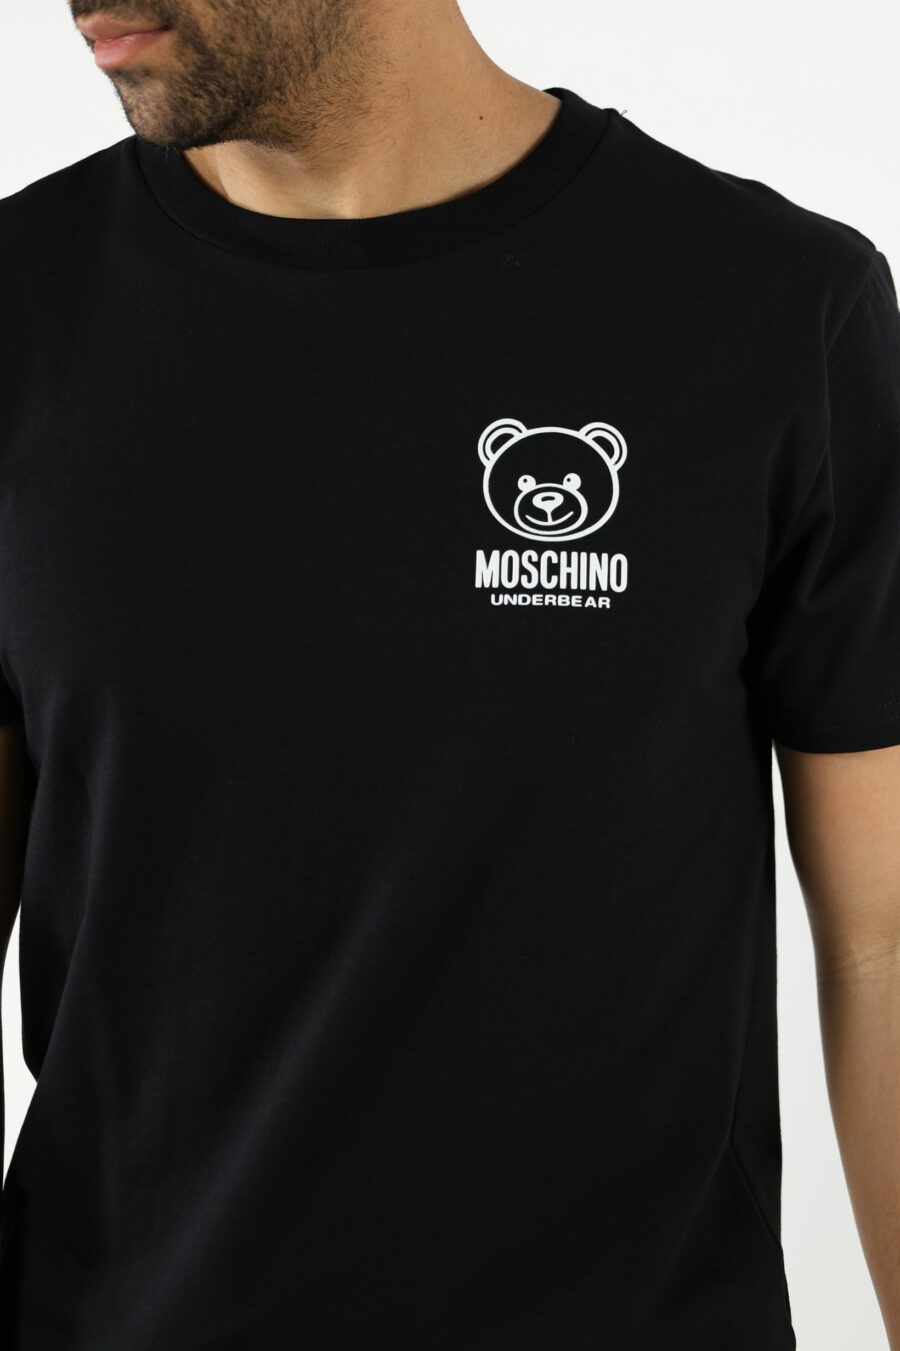 Camiseta negra con minilogo oso "underbear" en goma blanco - 111015